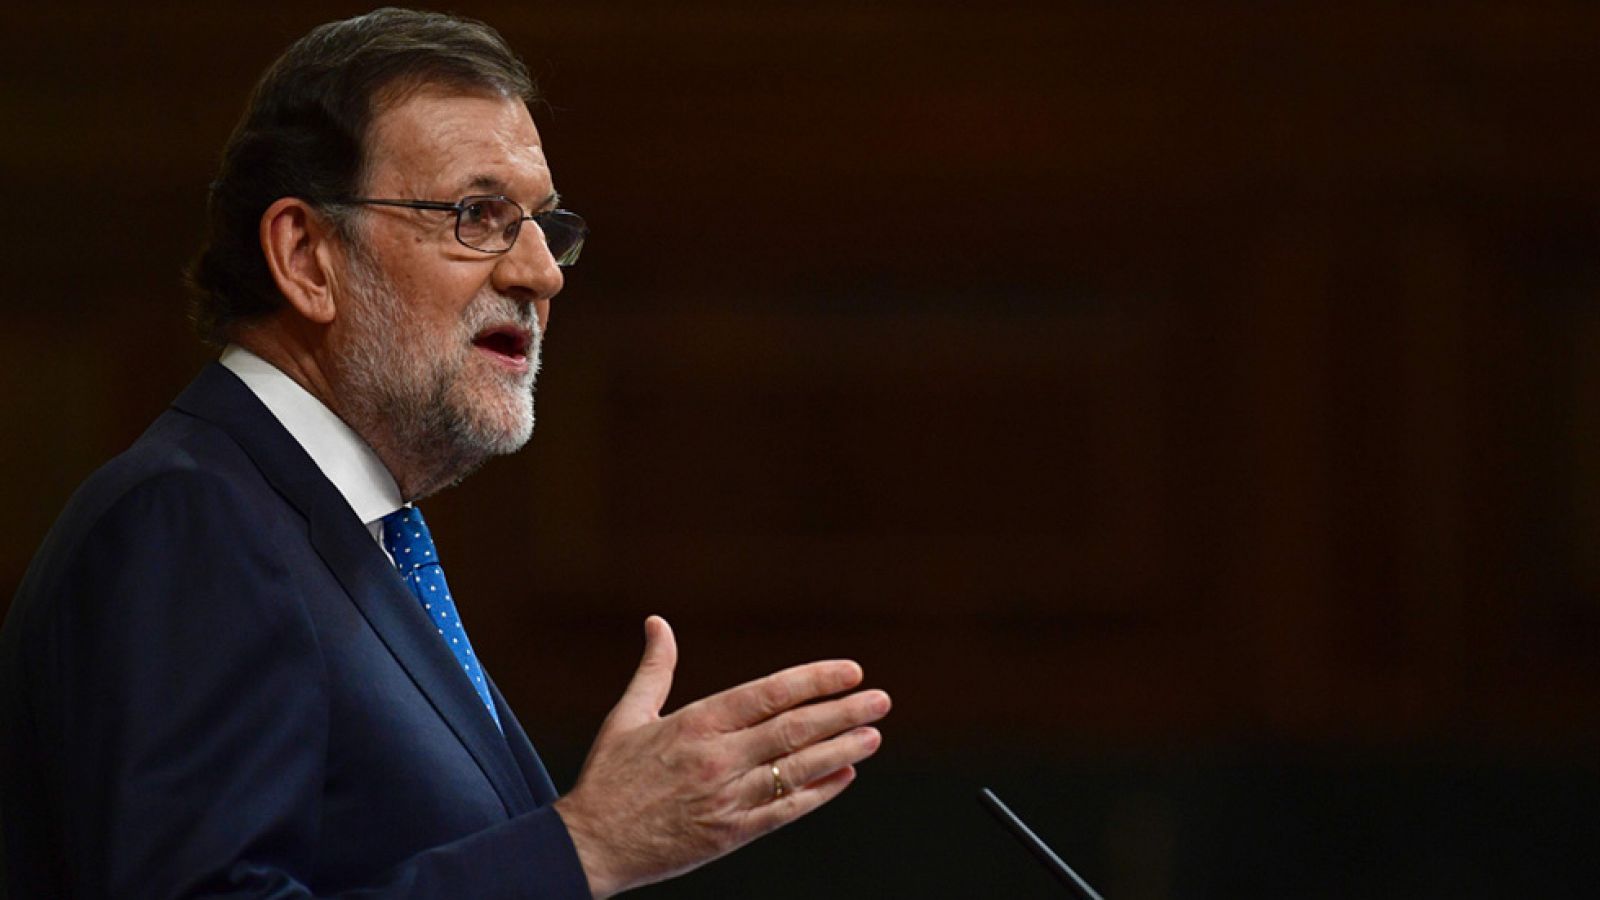 Rajoy: "La alternativa que yo planteo es la más respetuosa con la voluntad de los españoles y la más conveniente y razonable"